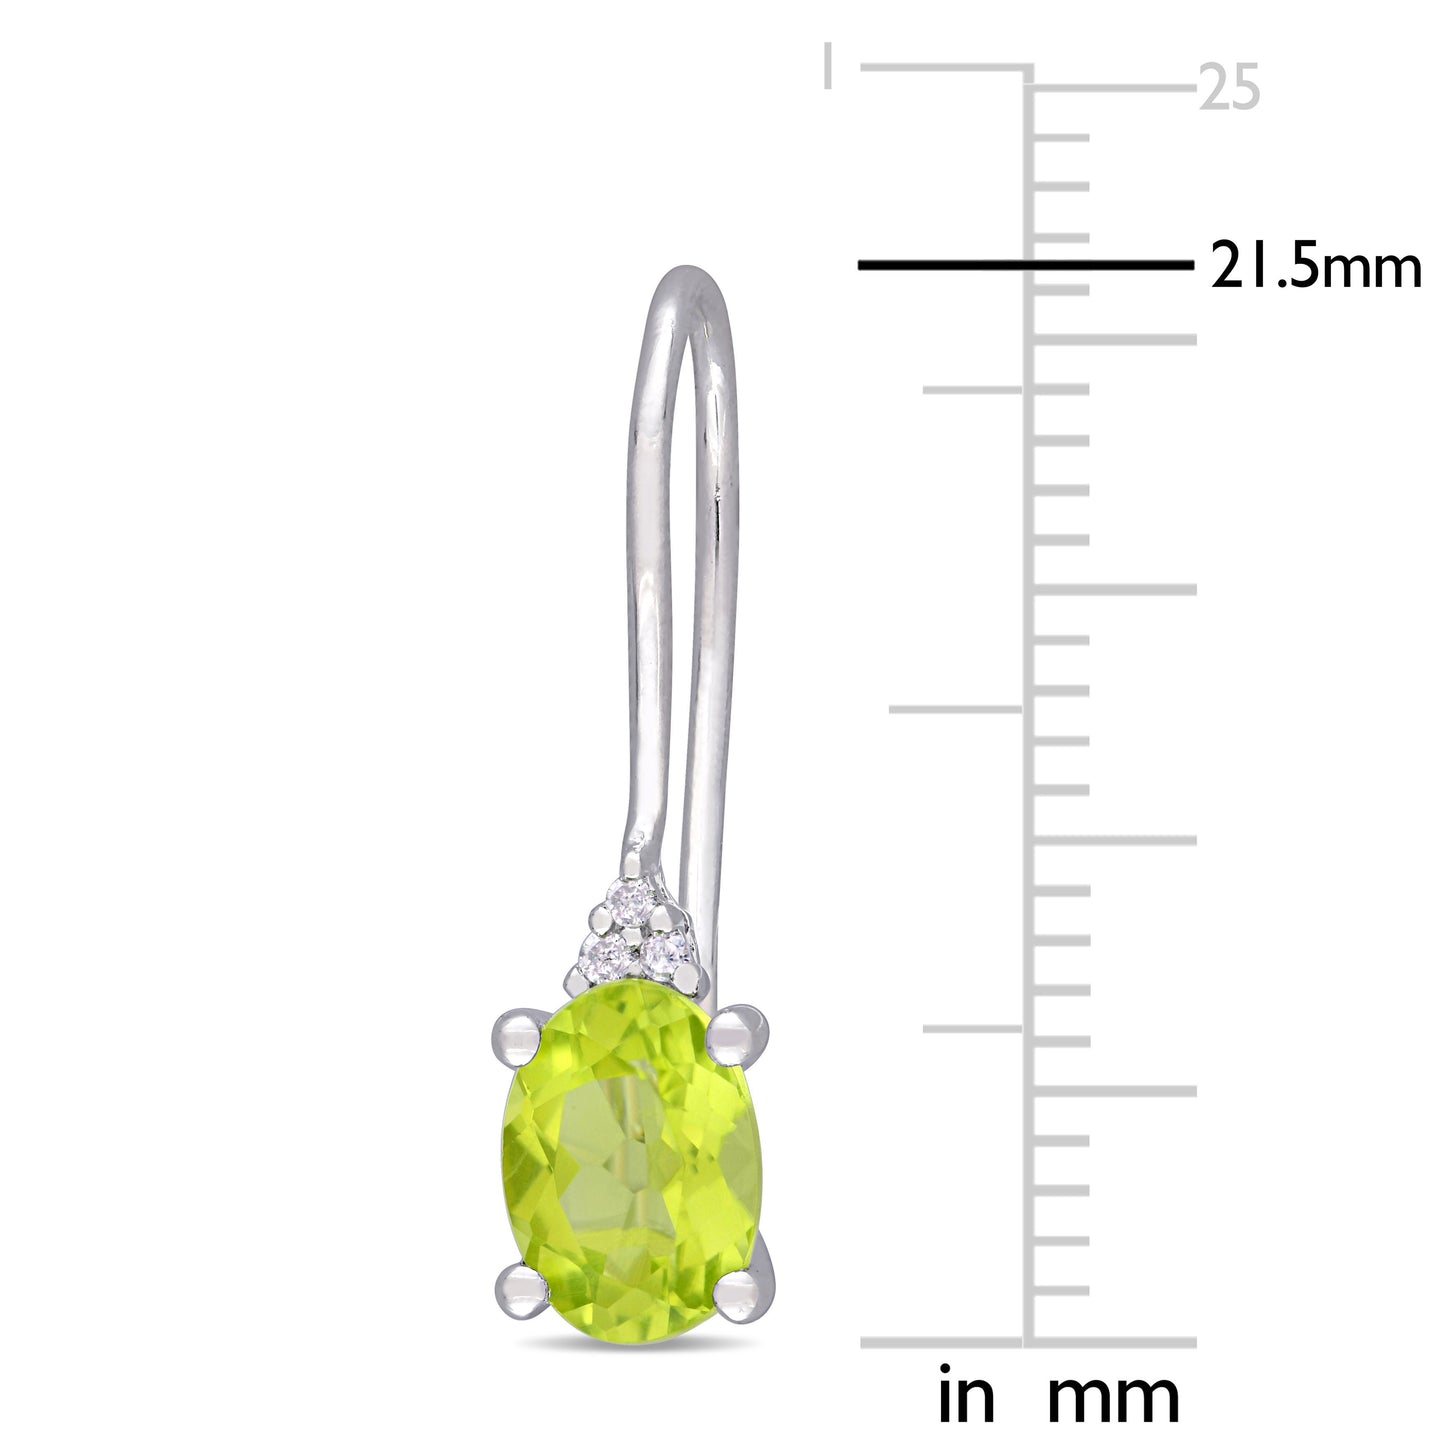 1 5/8 t Emerald Cut Peridot & 0.03ct Diamond Earrings in Sterling Silver